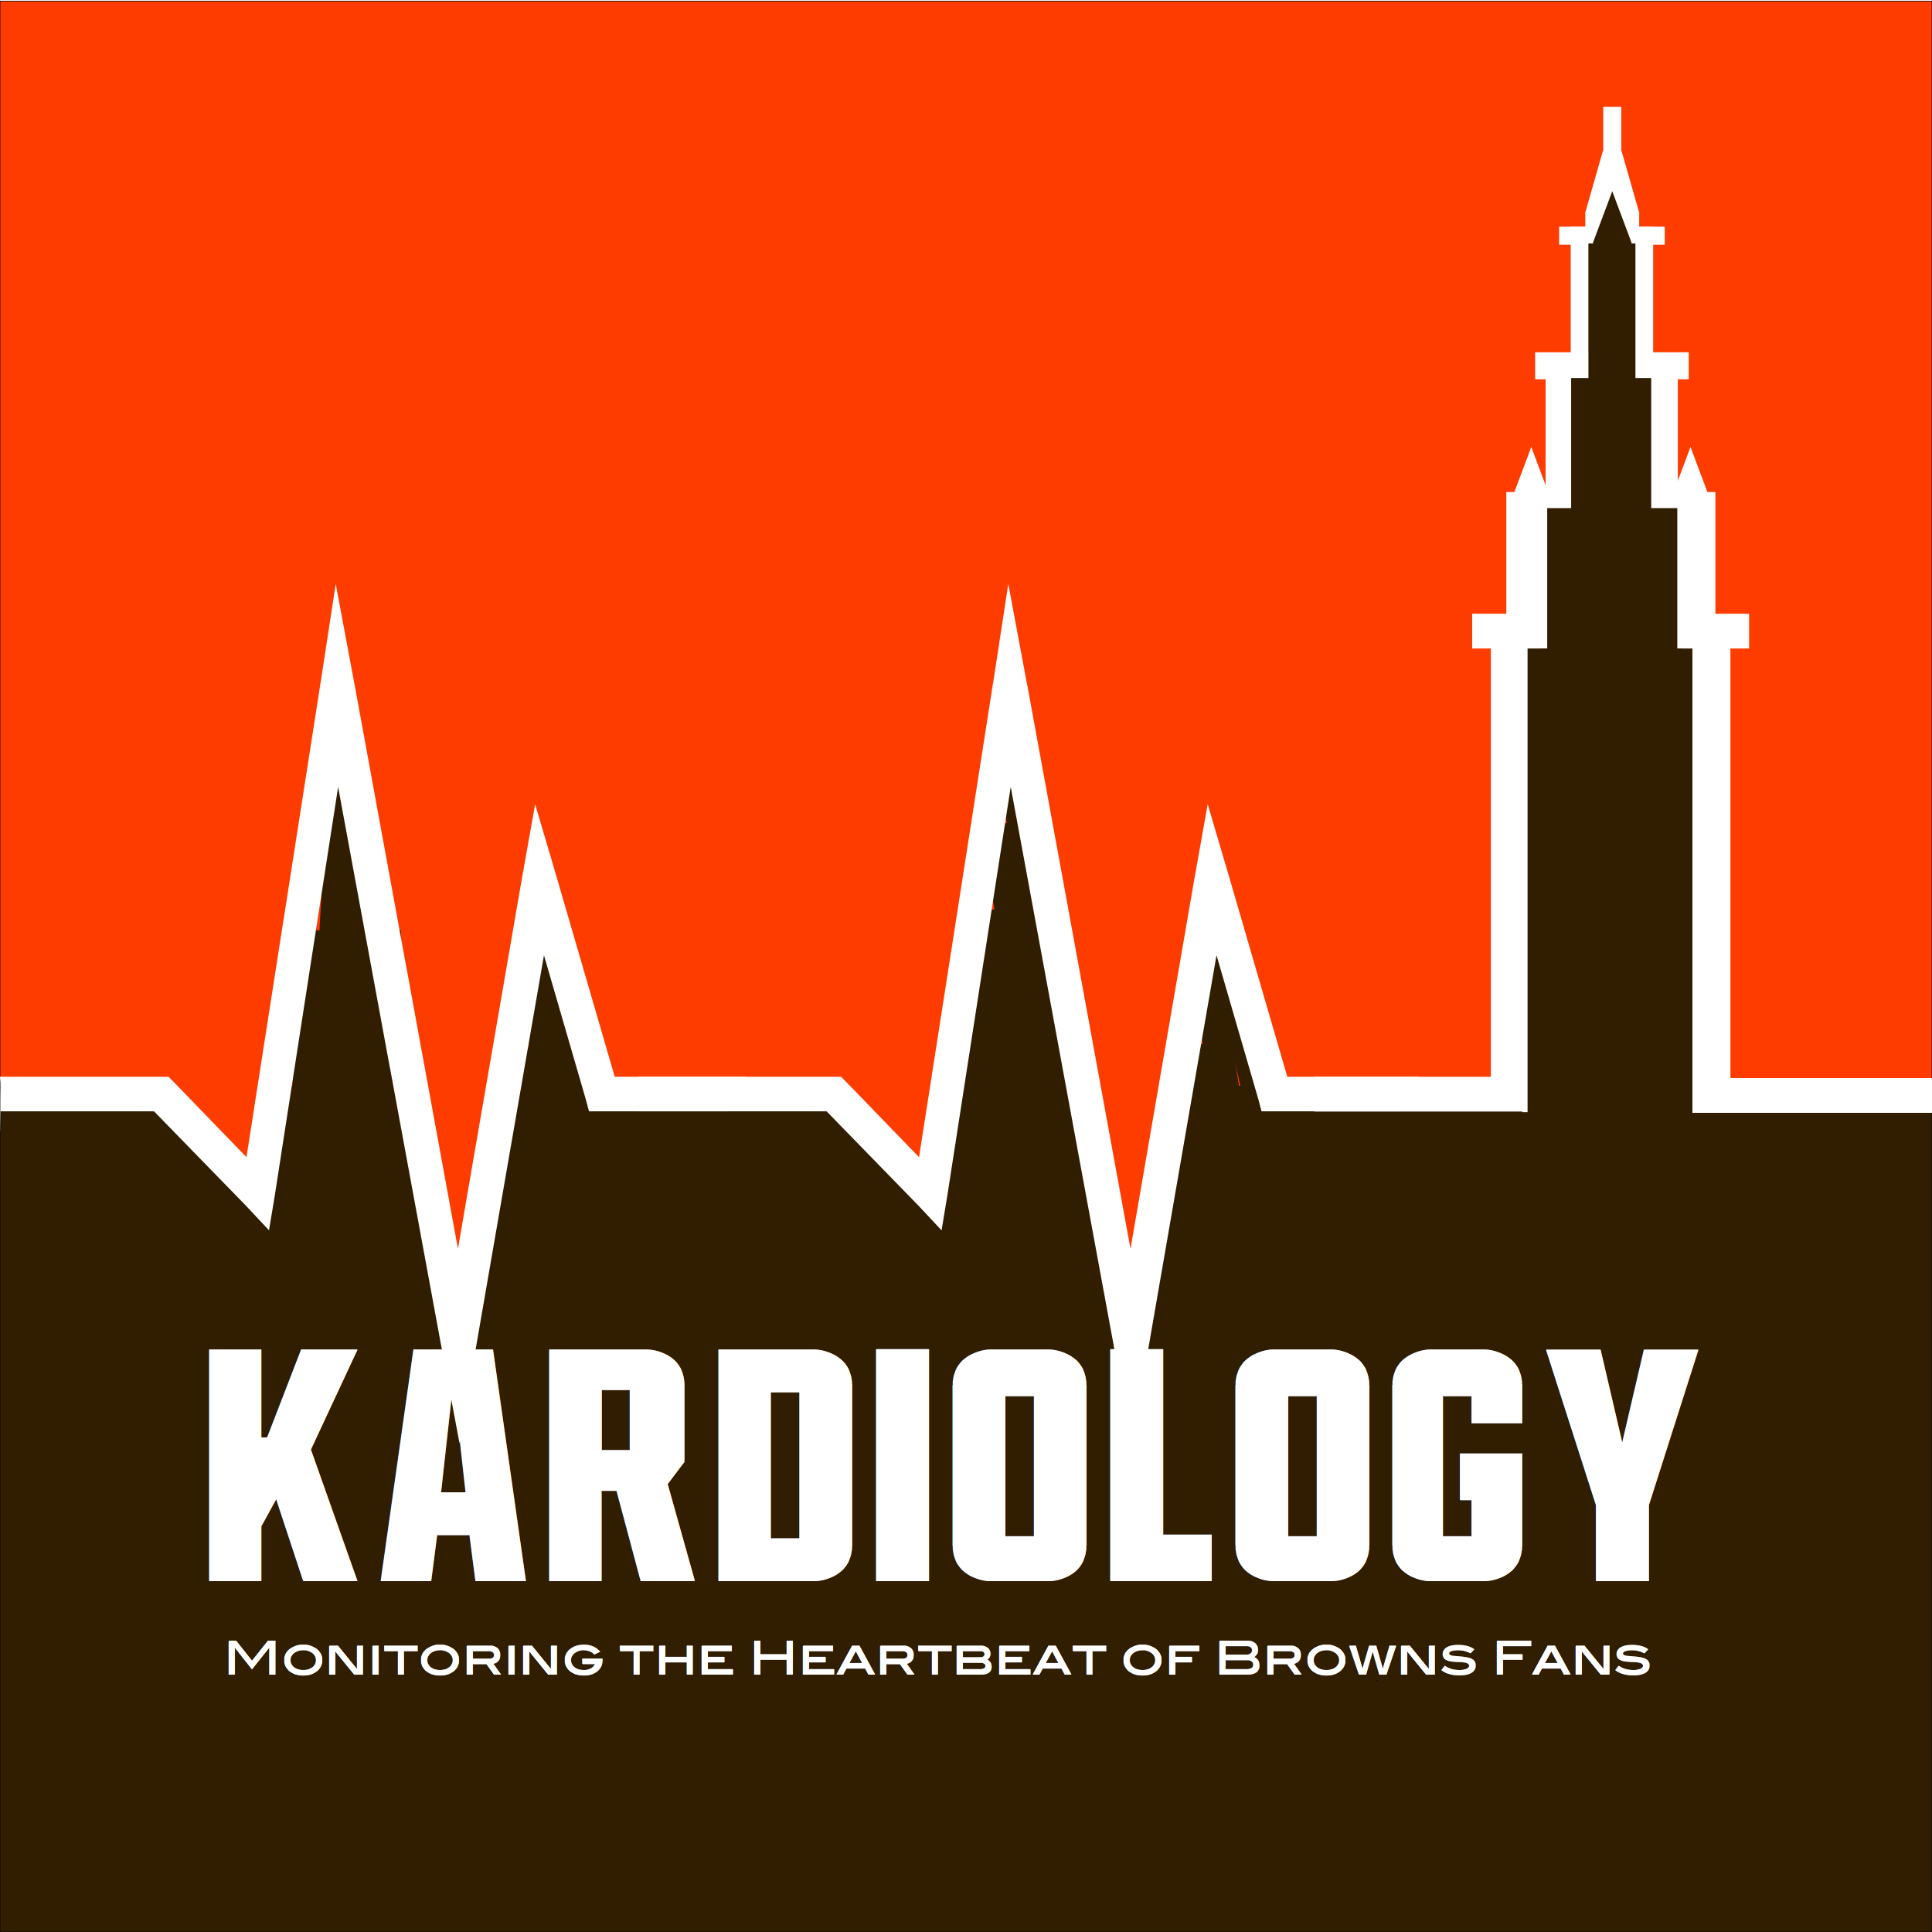 Artwork for podcast Kardiology